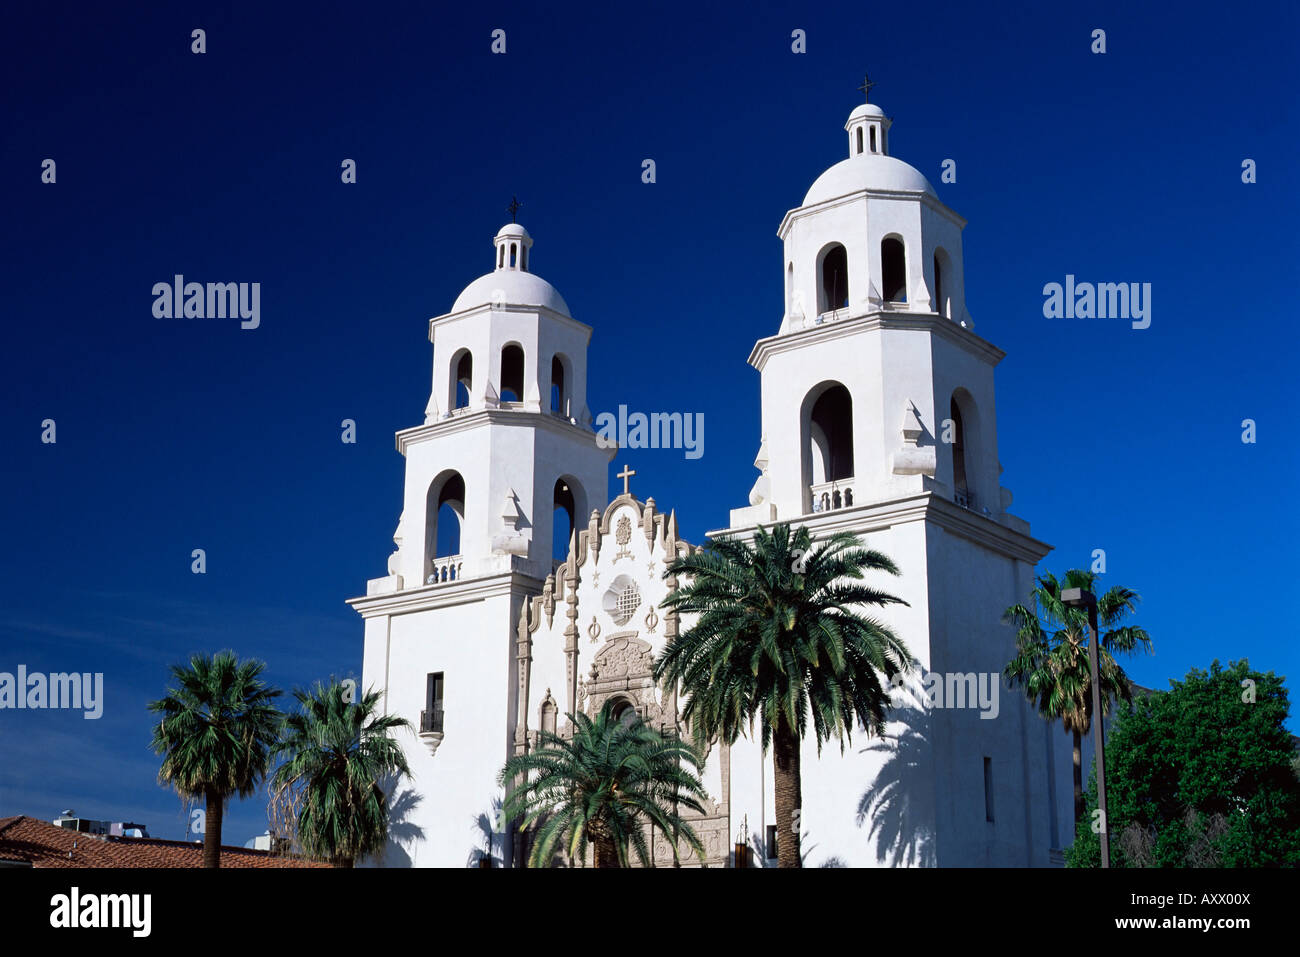 Die Twin Towers von St. Augustine Cathedral, Tucson, Arizona, Vereinigte Staaten von Amerika (U.S.A.), Nordamerika Stockfoto